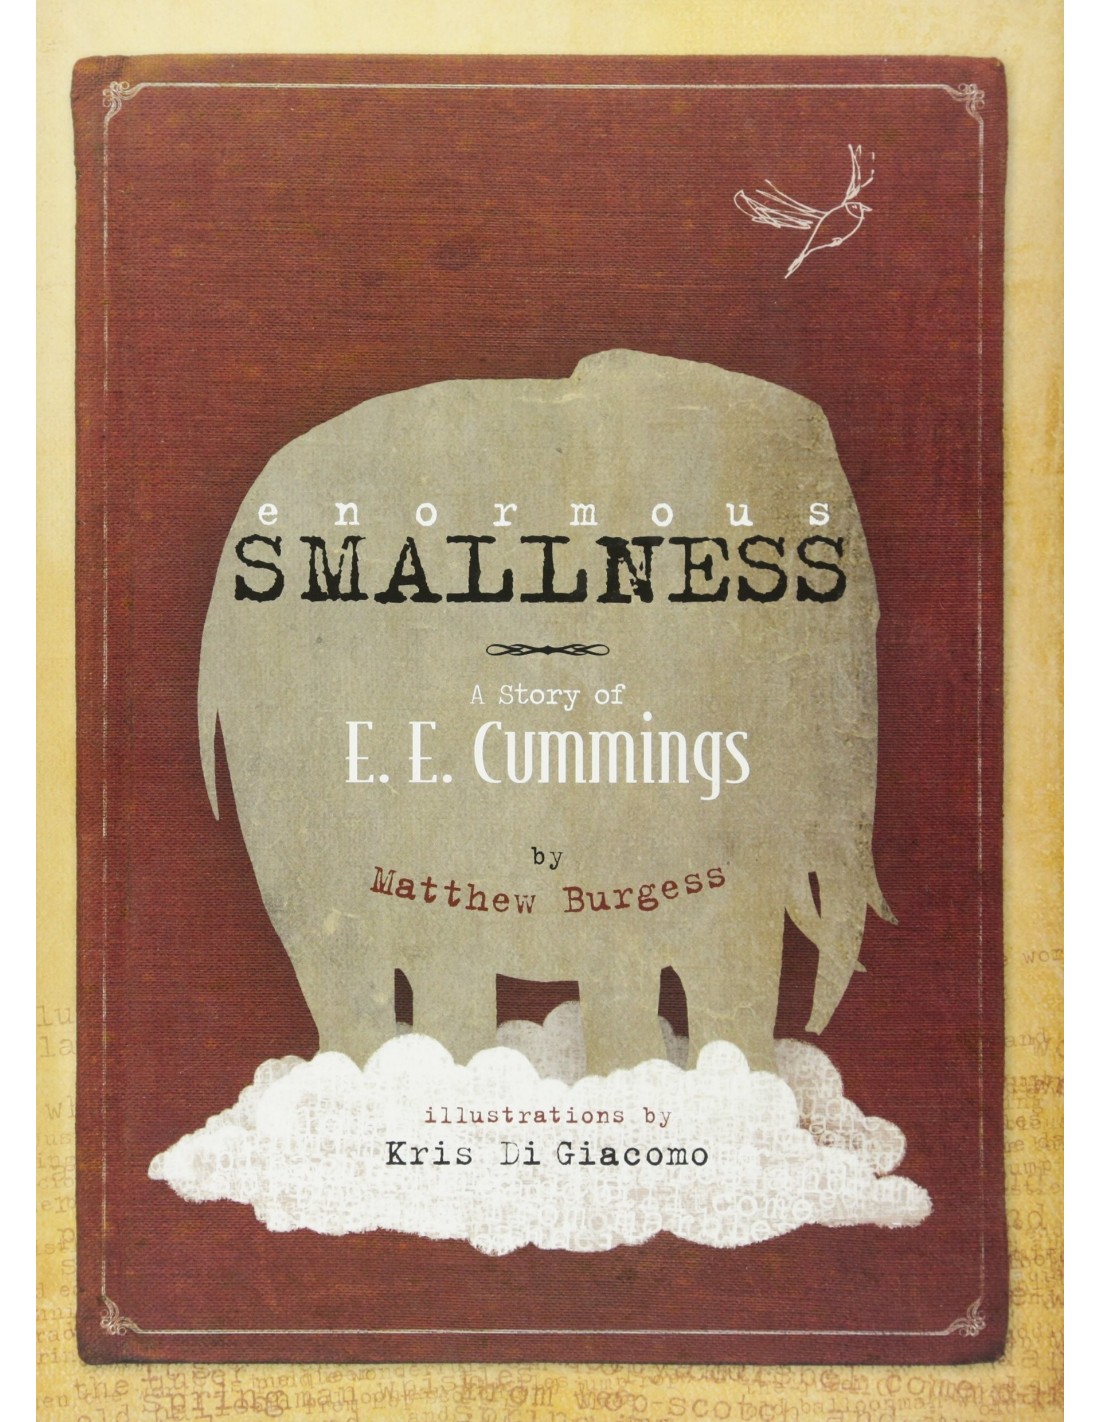 Enormous Smallness : A Story of E. E. Cummings